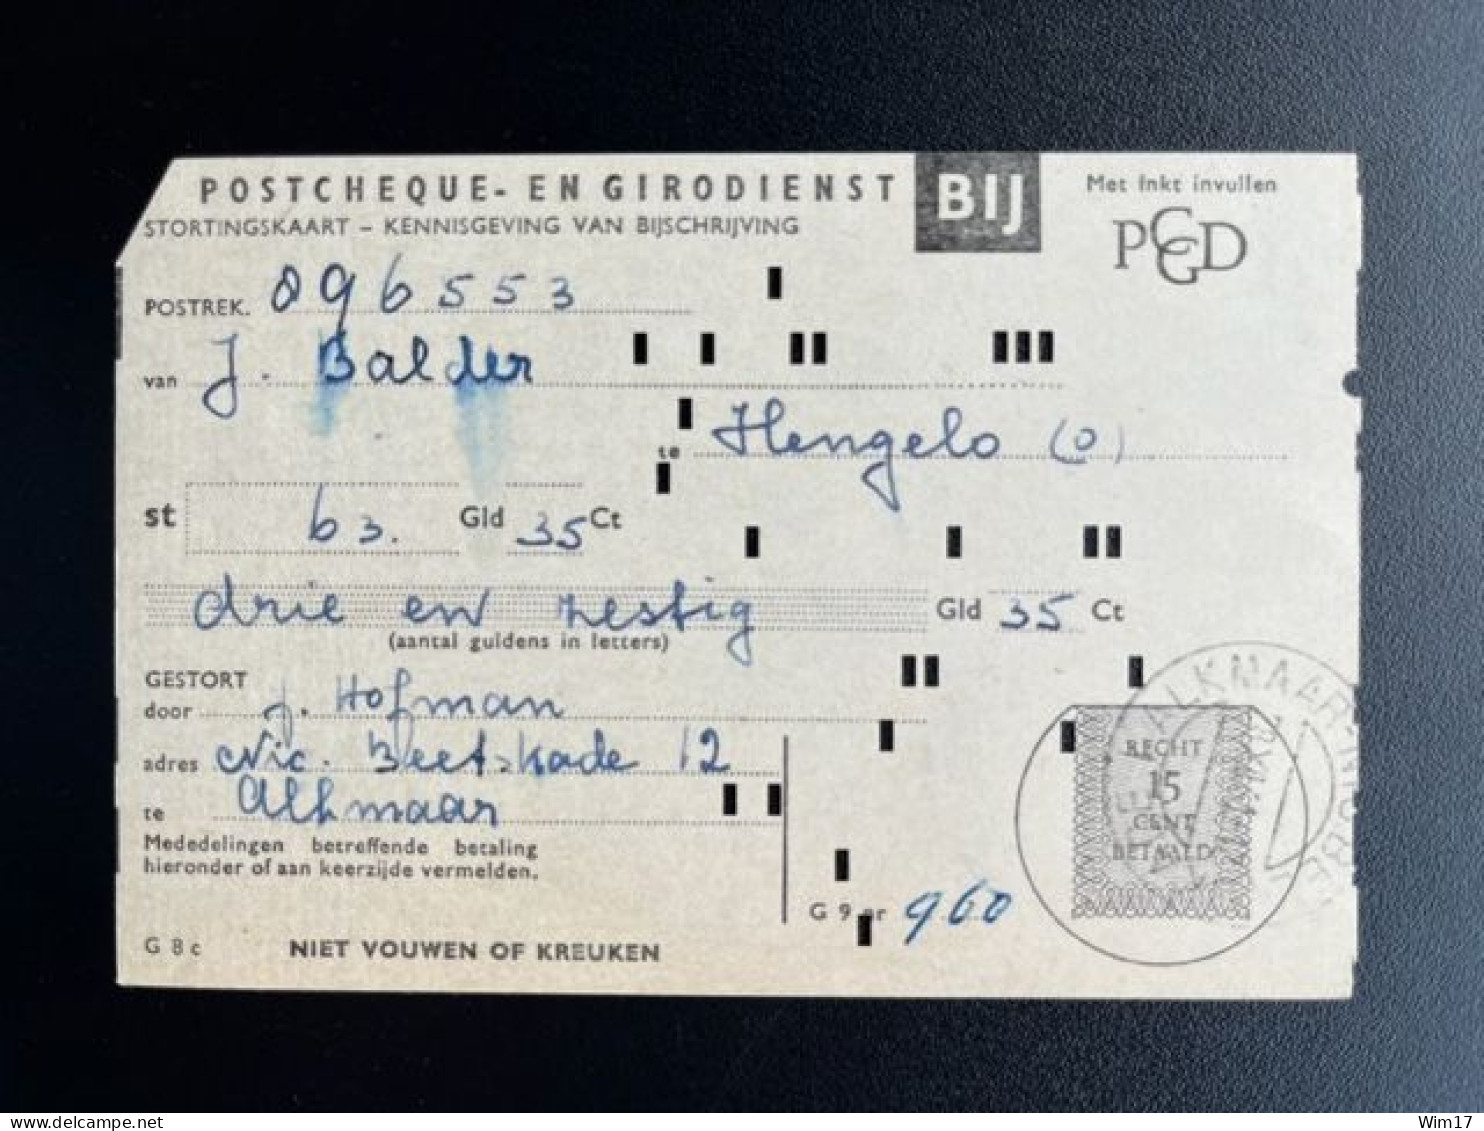 NETHERLANDS 1961 ALKMAAR 28-12-1961 PAYMENT RECEIPT POSTGIRO NEDERLAND ACCEPTGIRO STORTINGSRECHT - Briefe U. Dokumente